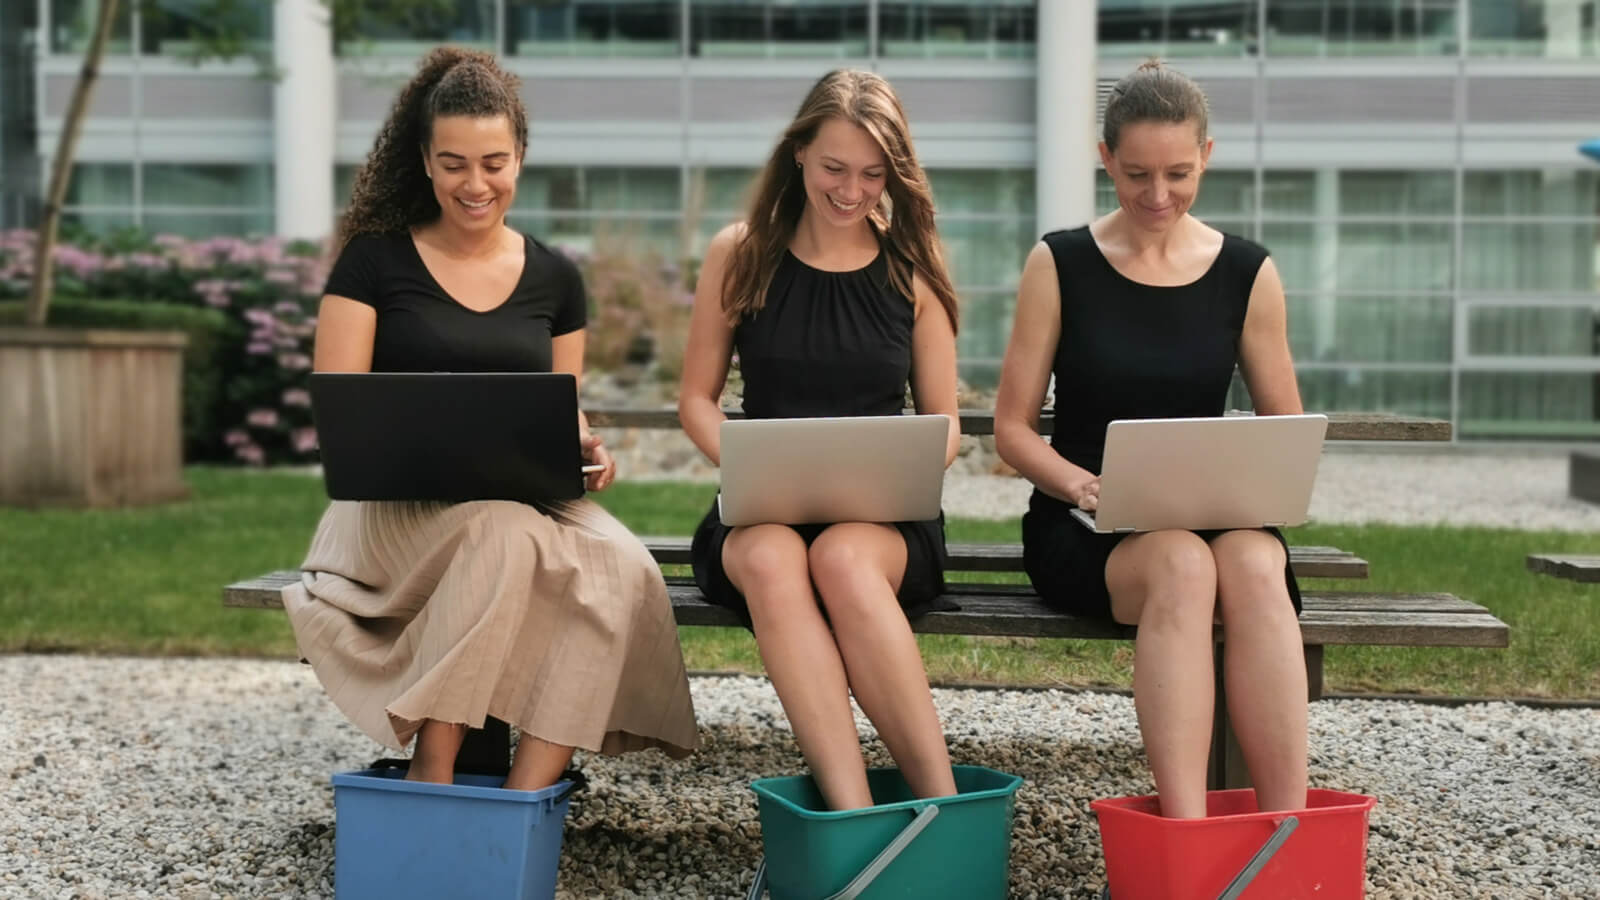 Campagne afbeelding van drie vrouwen op een bank, op schoot hebben zij een laptop. Ze zitten met hun voeten in een tijltje.